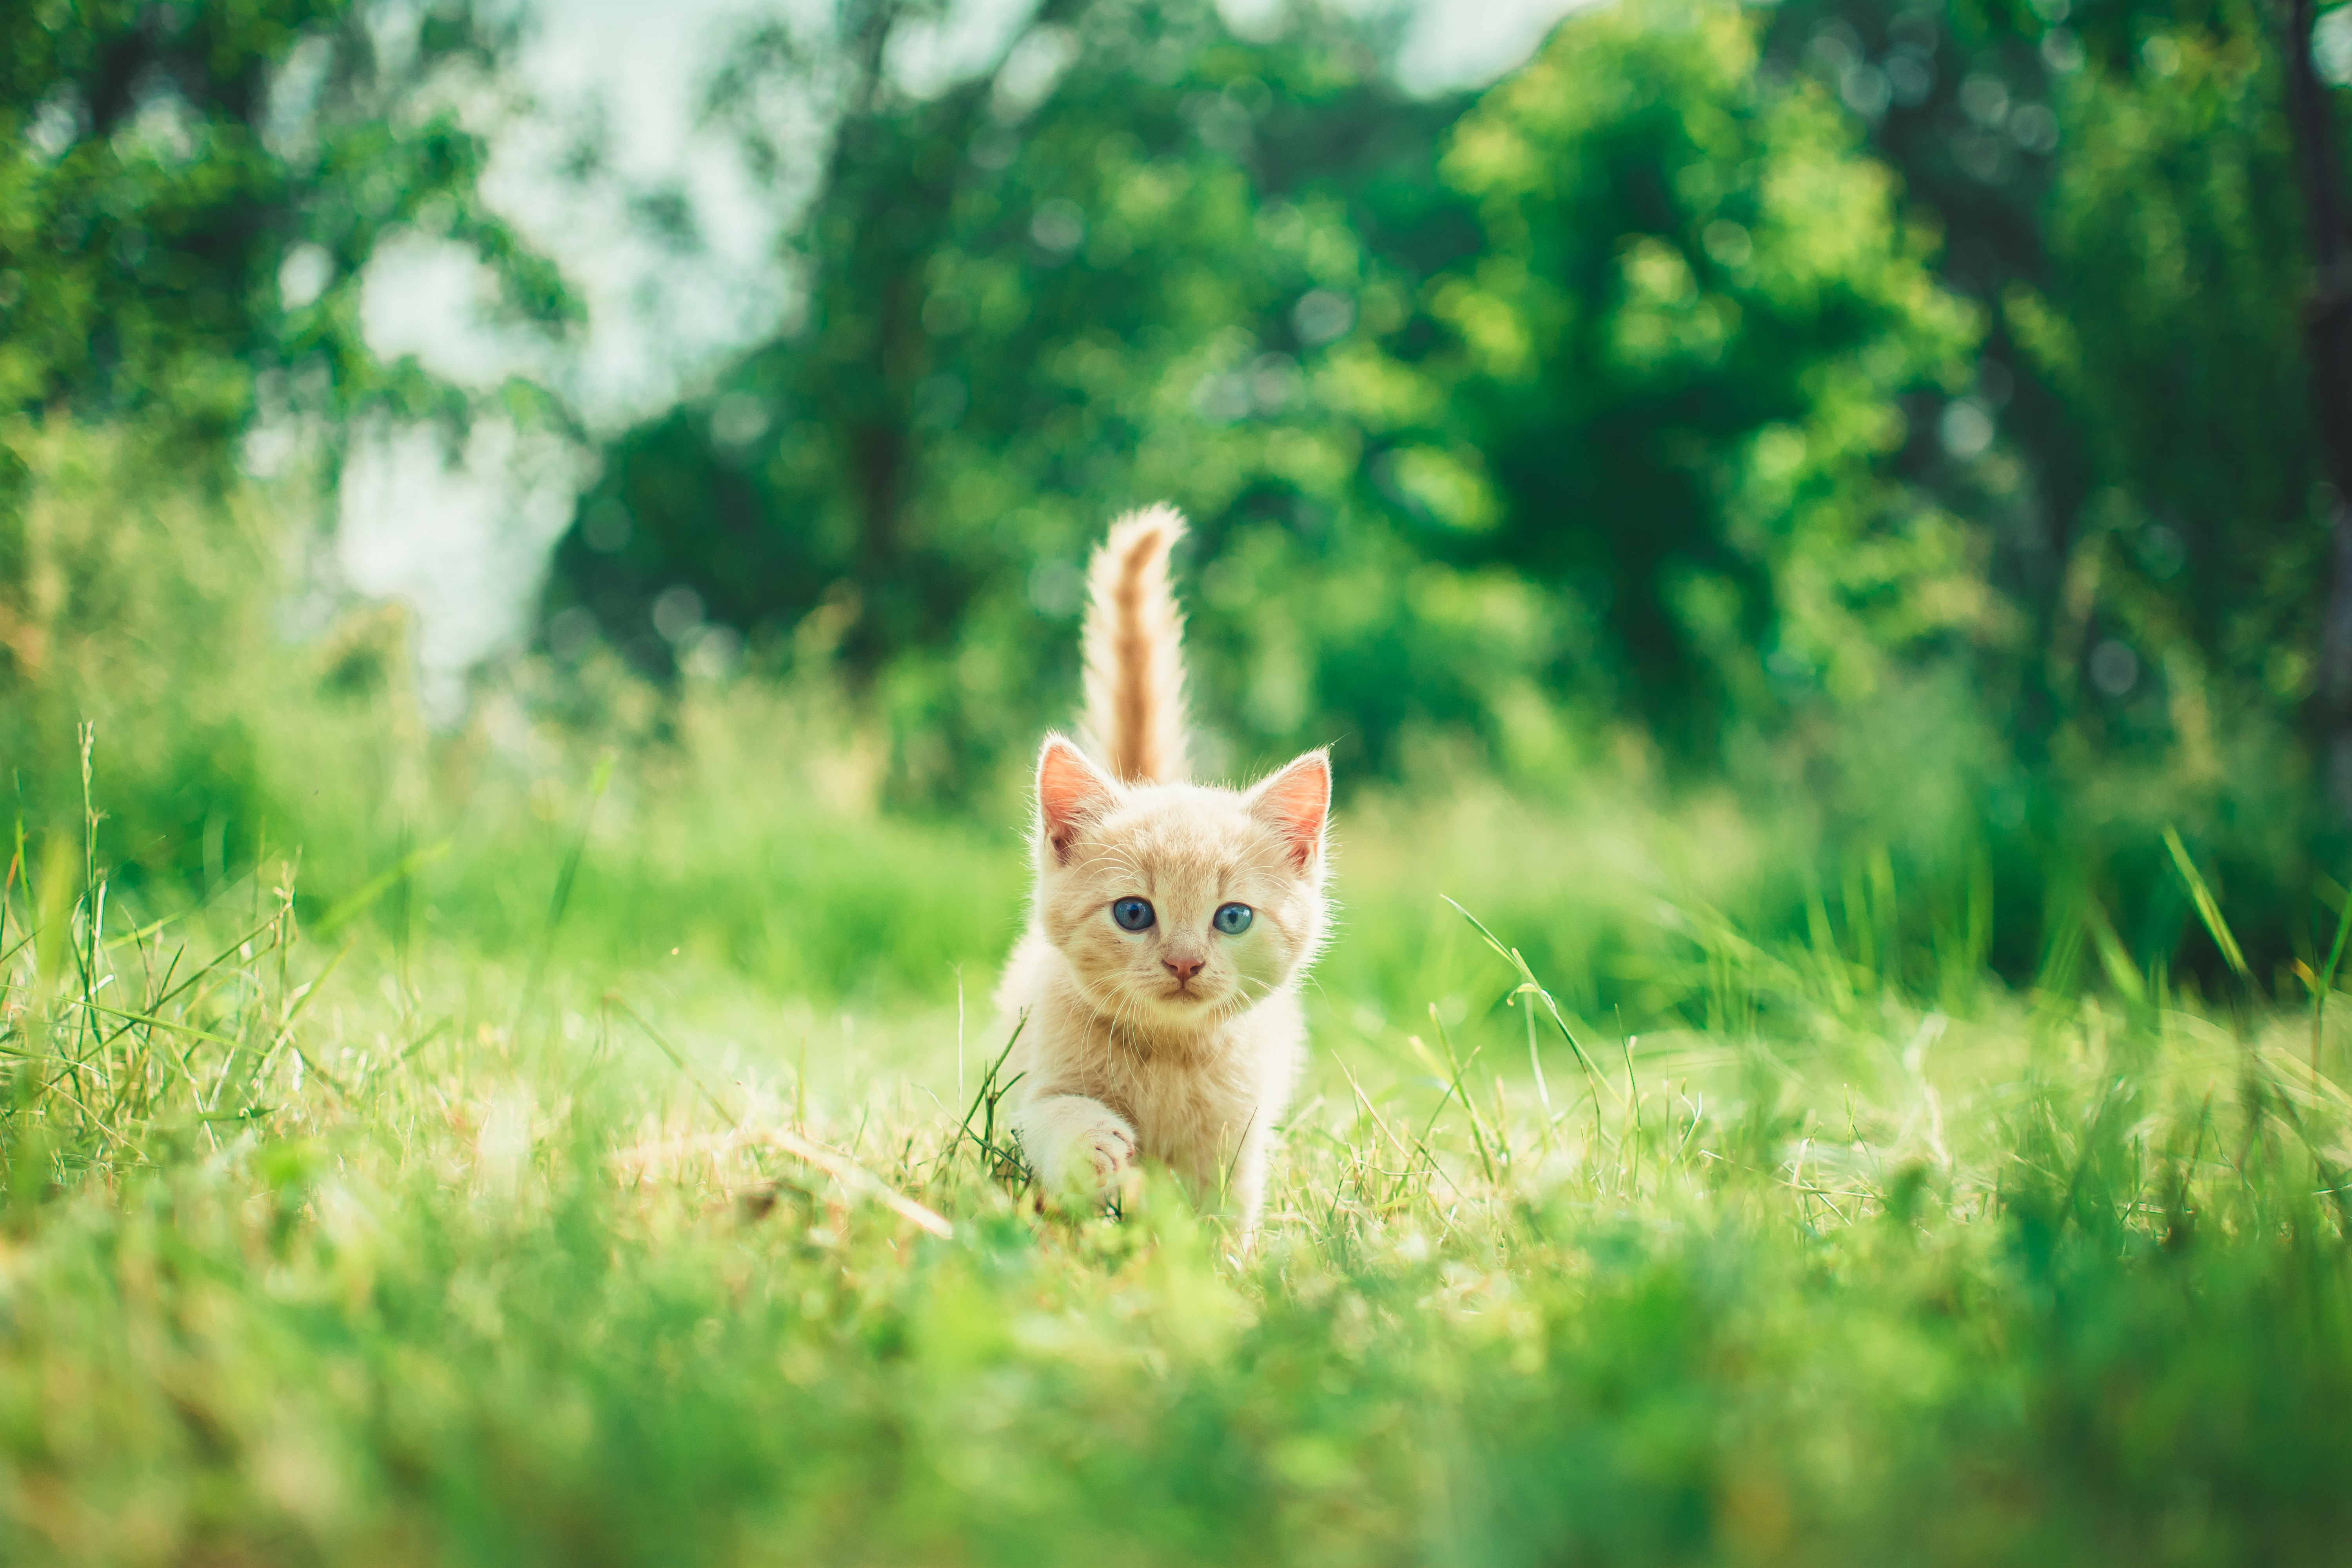 Las razas de gatos más inteligentes según expertos: ¿está su michi